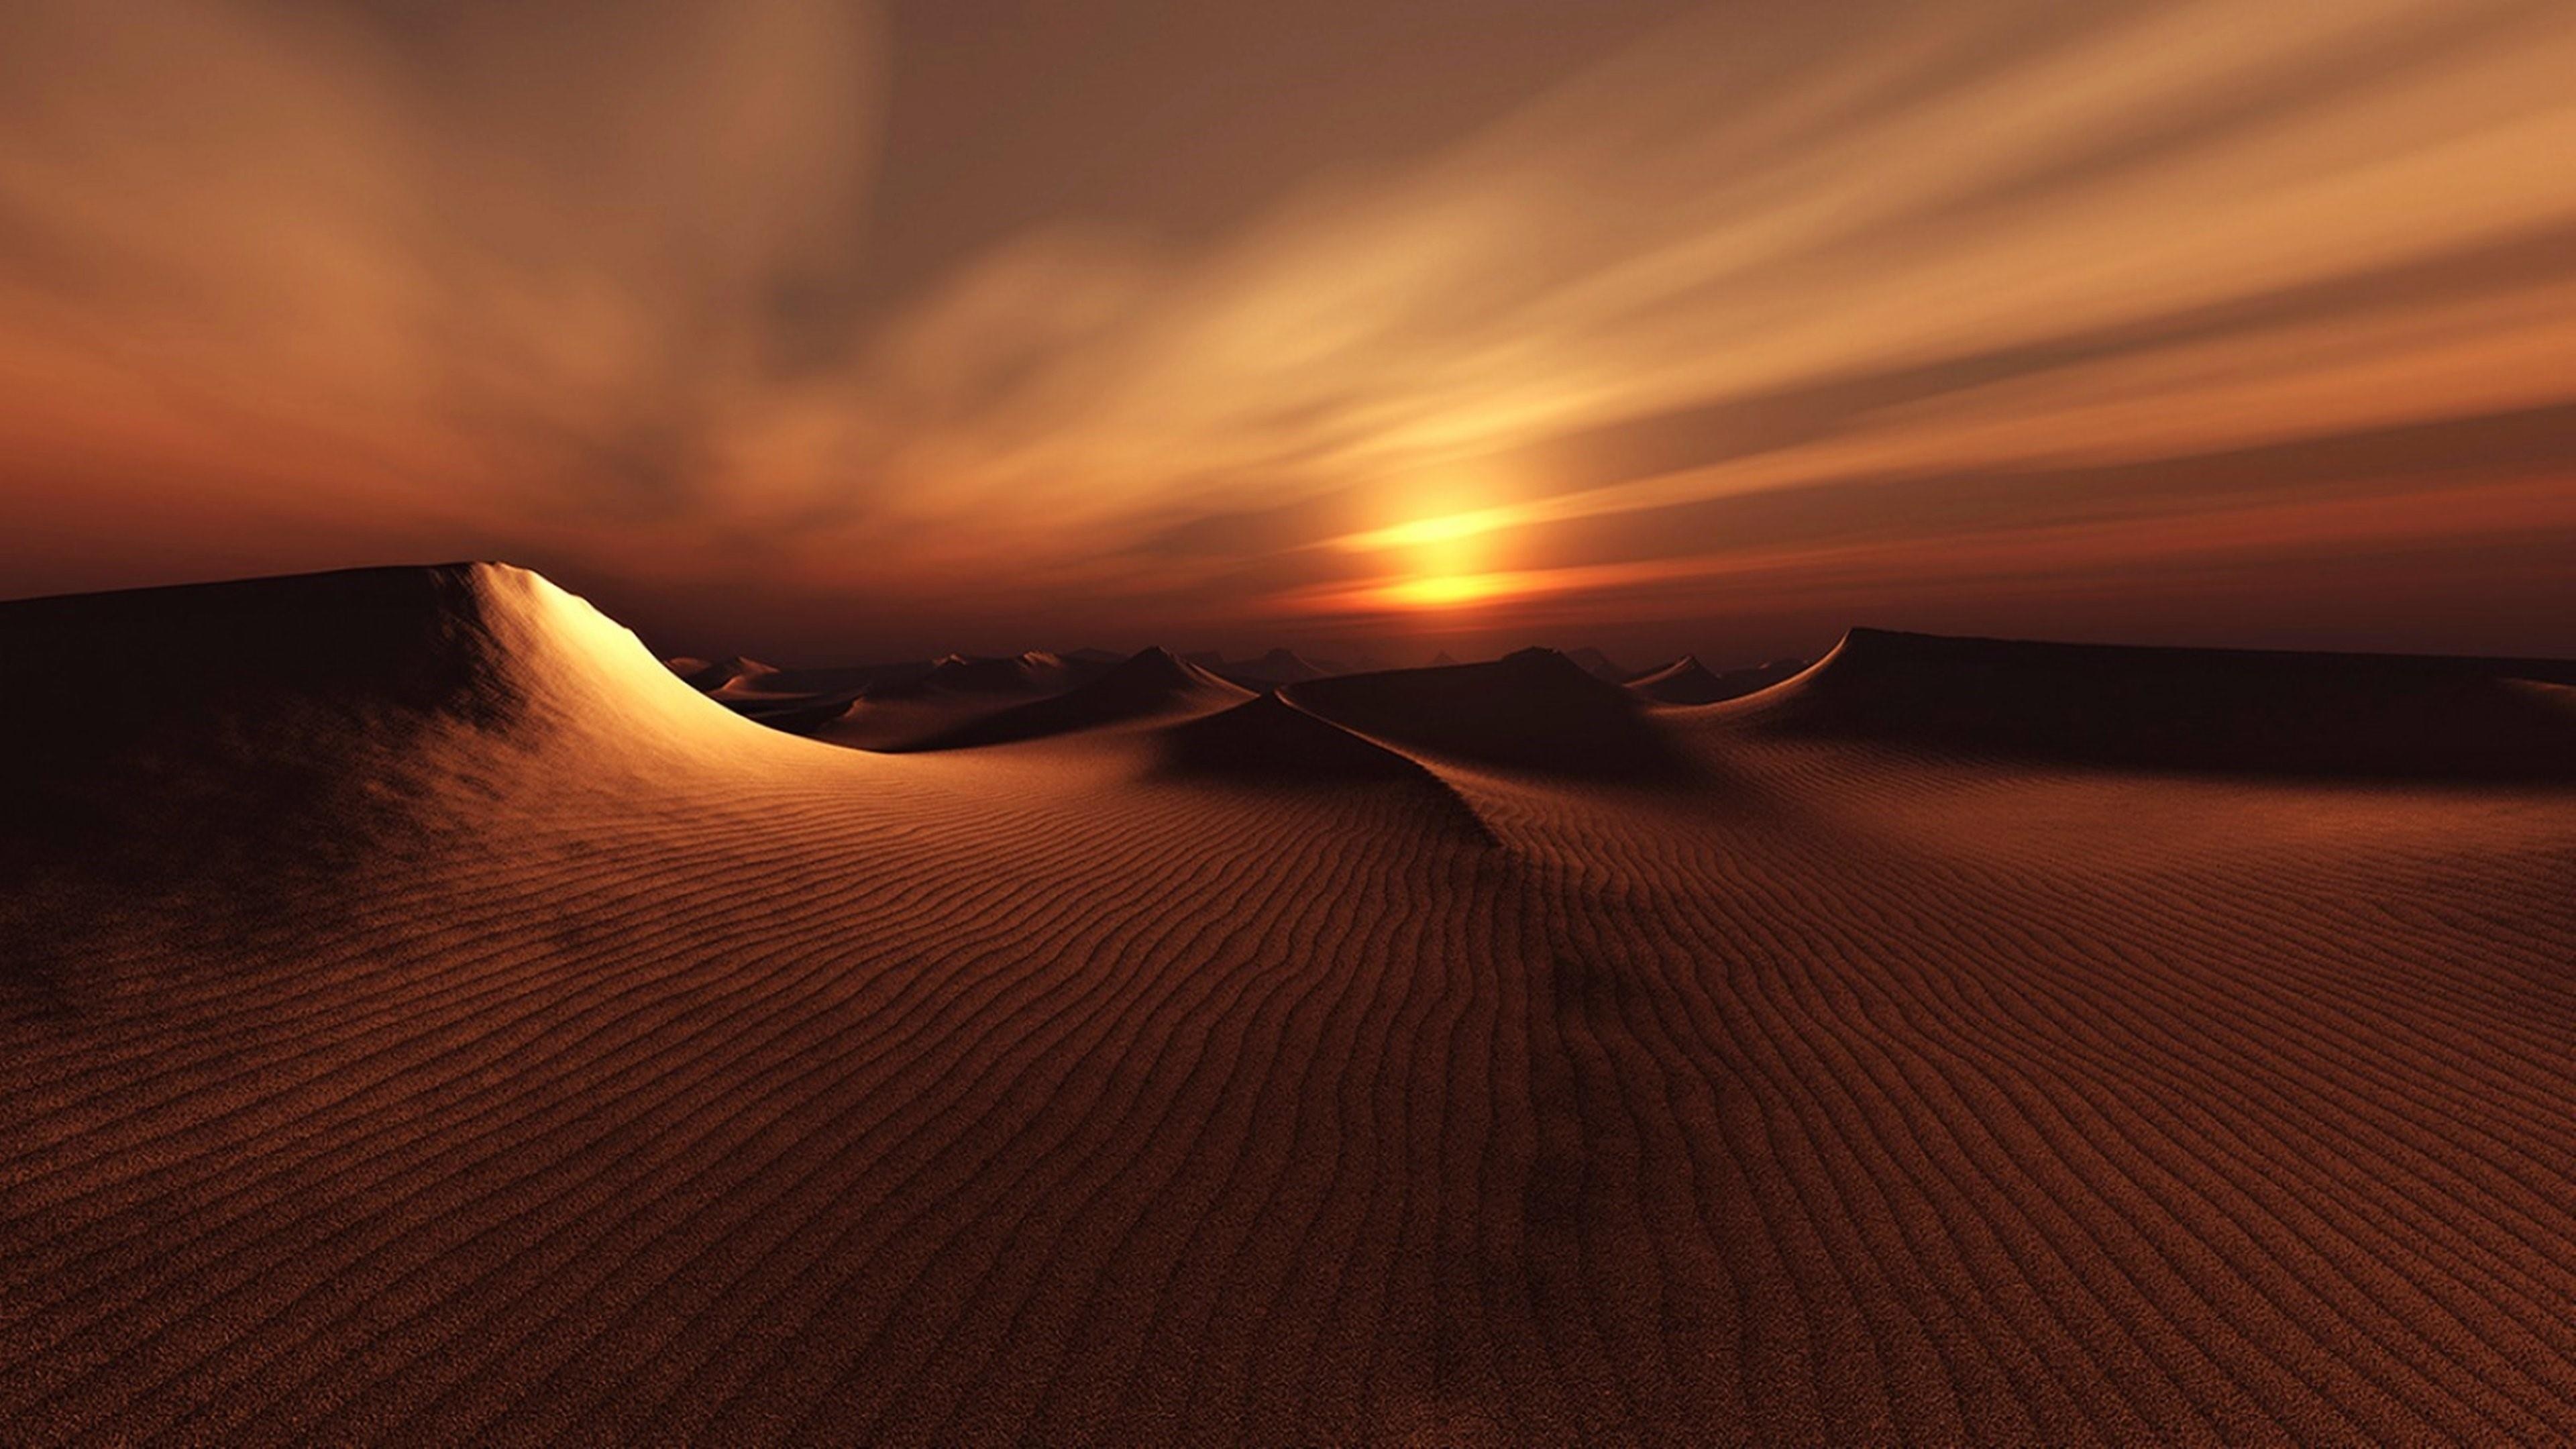 Gobi Desert, Desert sunset, Breathtaking beauty, Golden hour, 3840x2160 4K Desktop